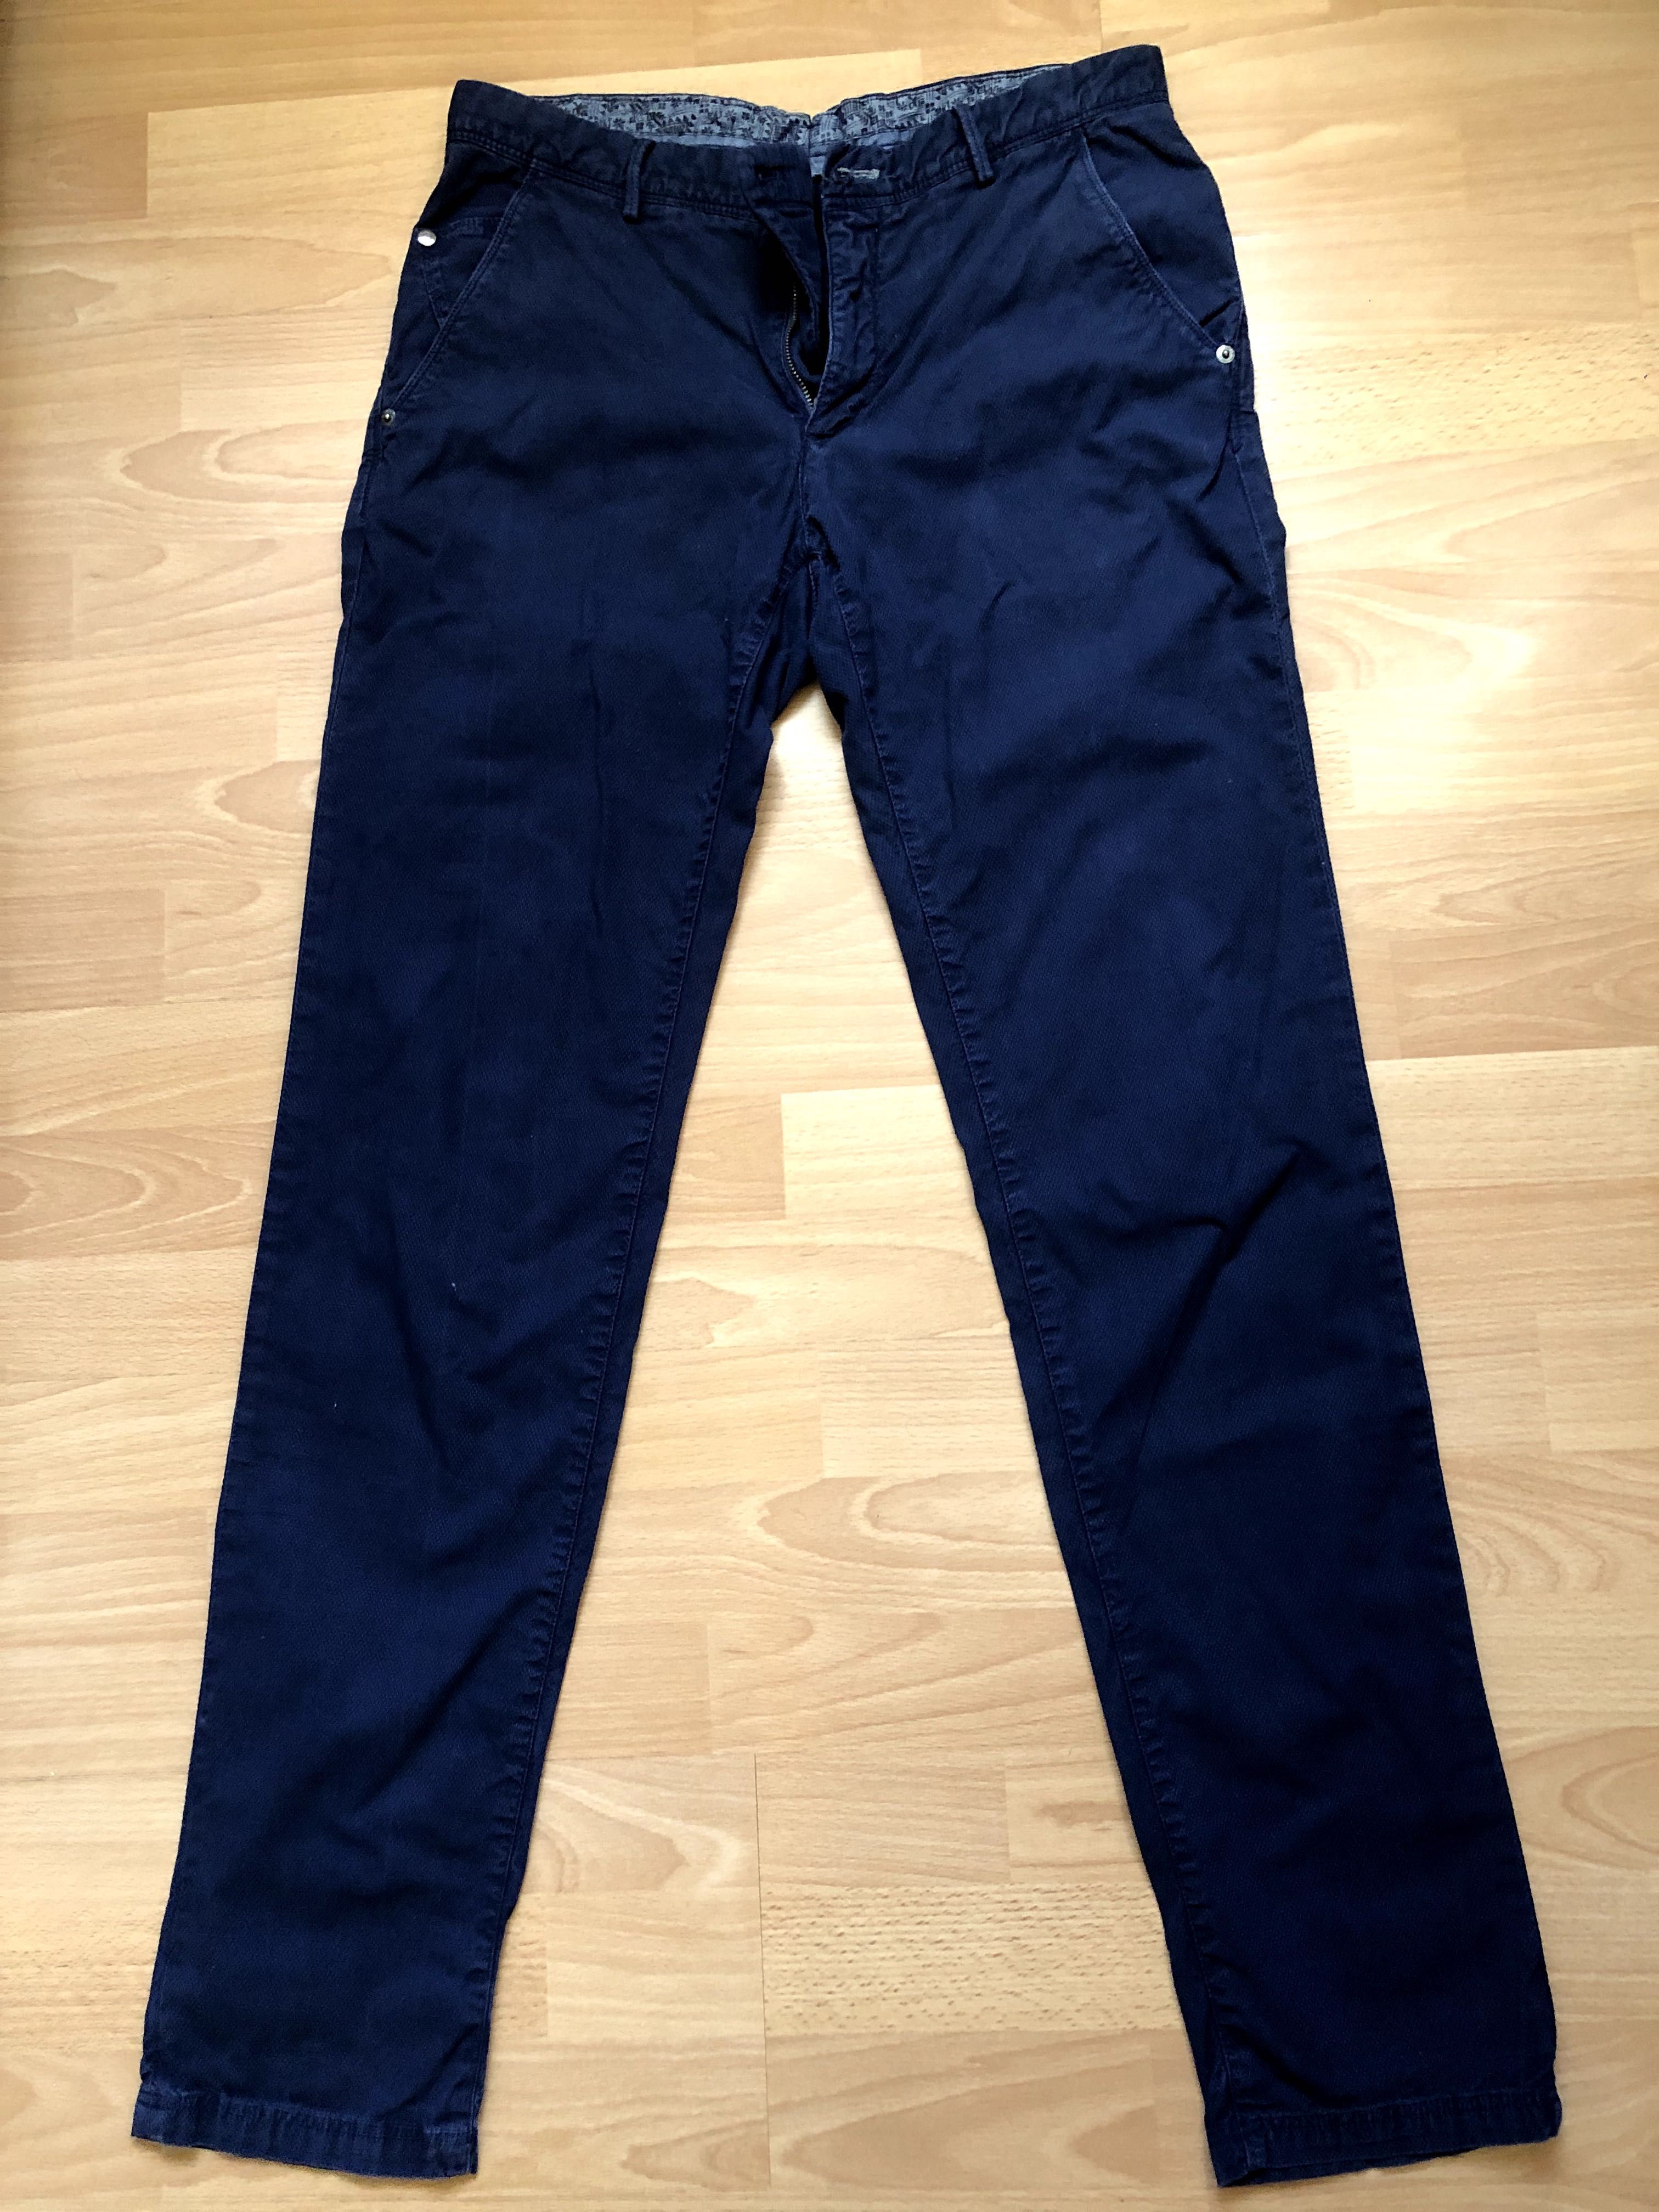 2 броя мъжки панталон Massimo Dutti, тъмн сини